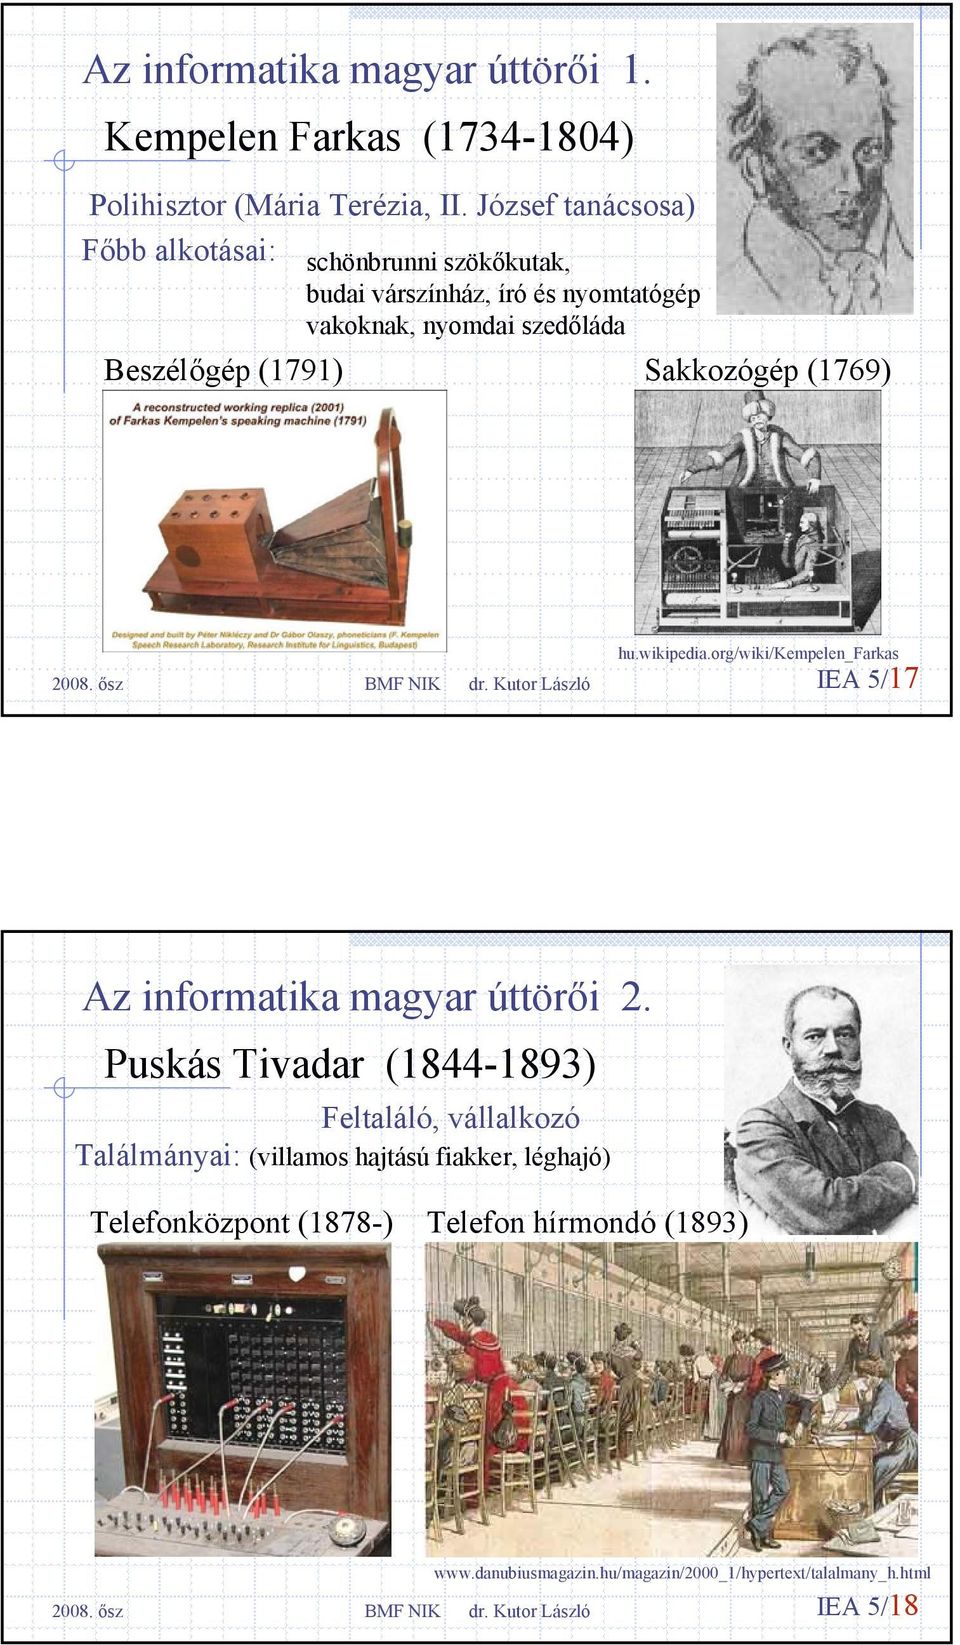 (1791) Sakkozógép (1769) hu.wikipedia.org/wiki/kempelen_farkas IEA 5/17 Az informatika magyar úttörői 2.